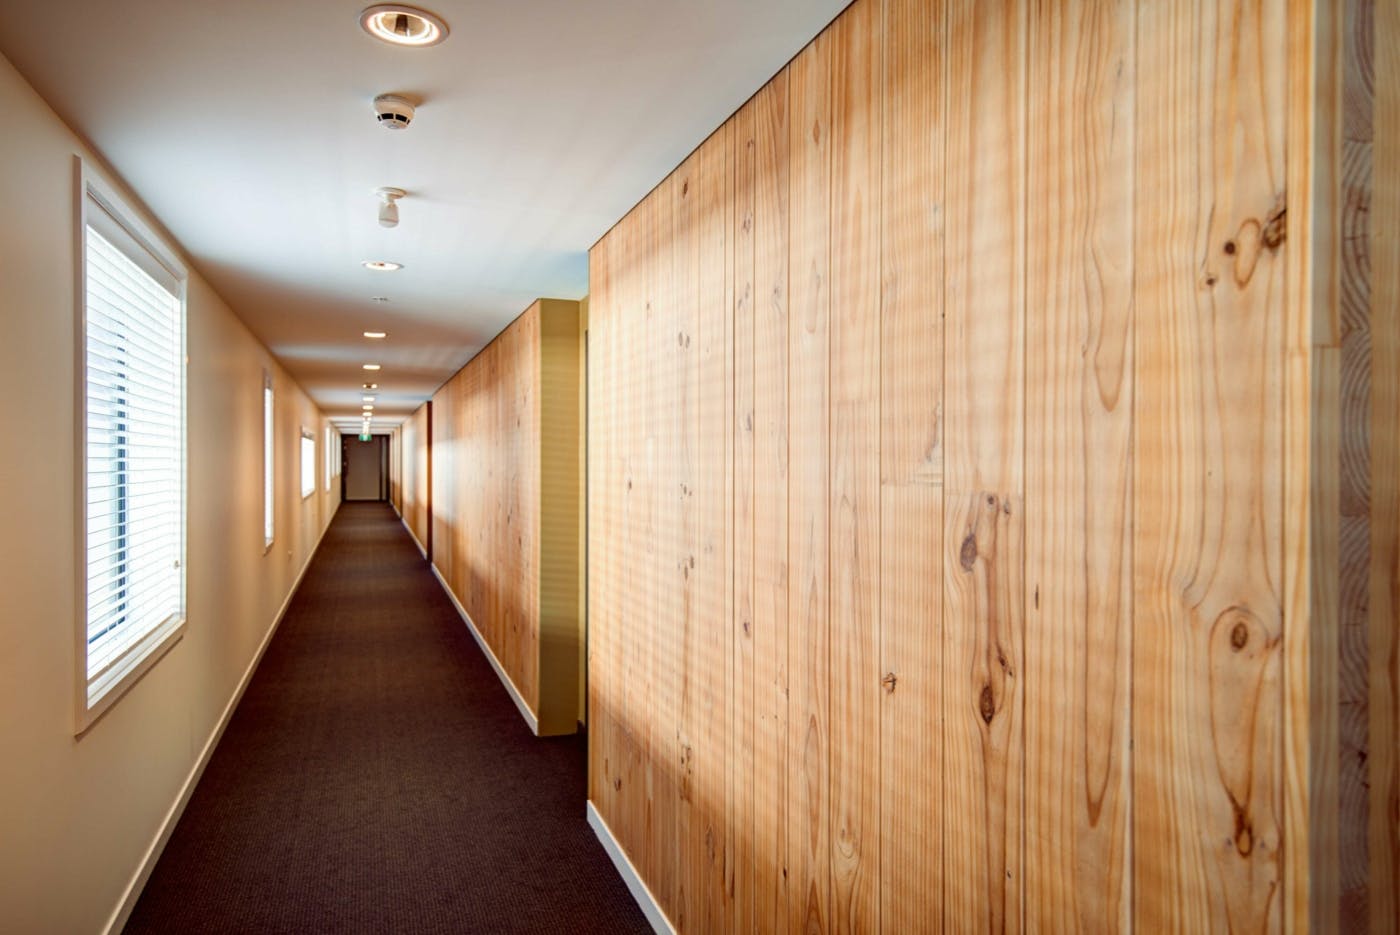 Park Lane interior hallway with CLT min